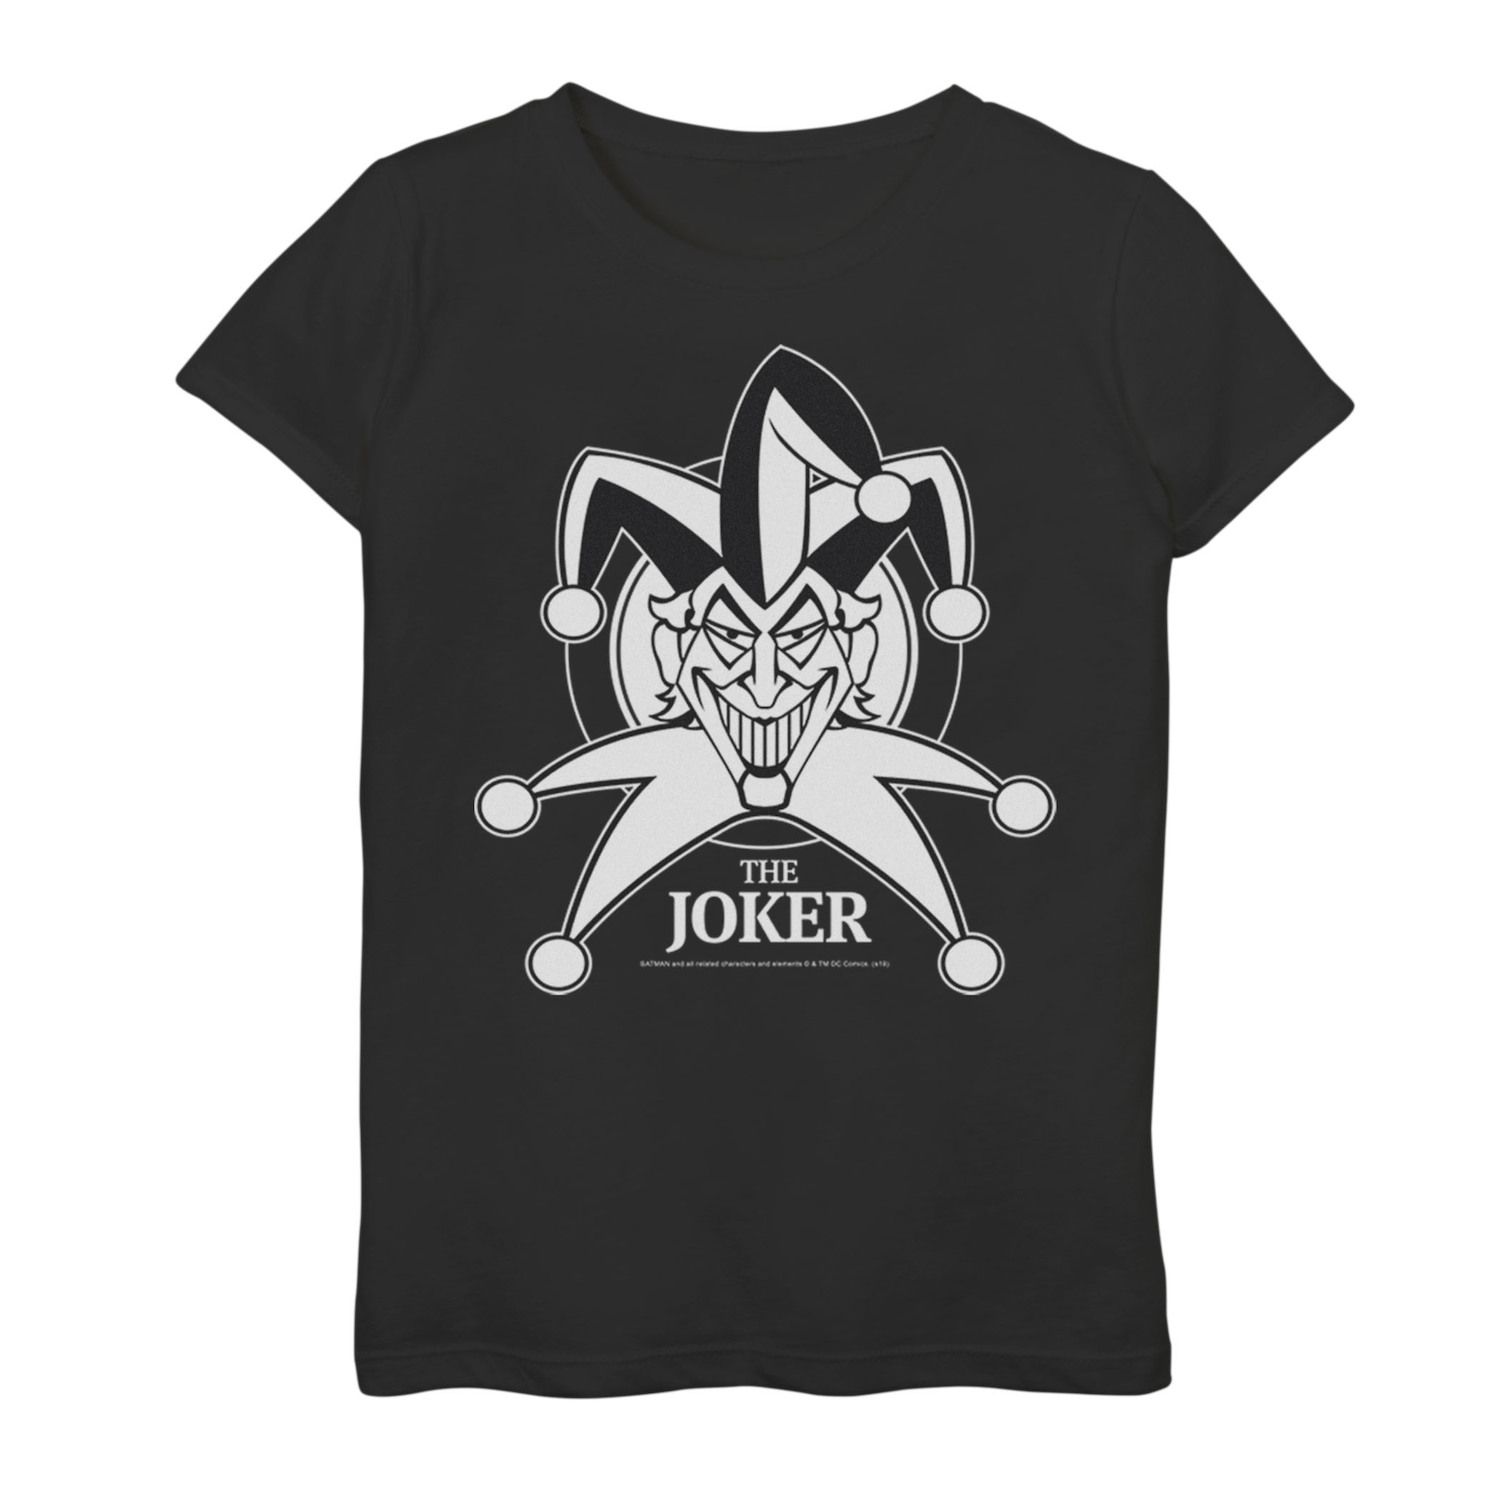 Классическая футболка с графическим рисунком и плакатом для девочек 7–16 лет DC Comics Joker Smiling DC Comics футболка с геометрическим плакатом и графическим рисунком dc comics для девочек 7–16 лет с бэтменом dc comics